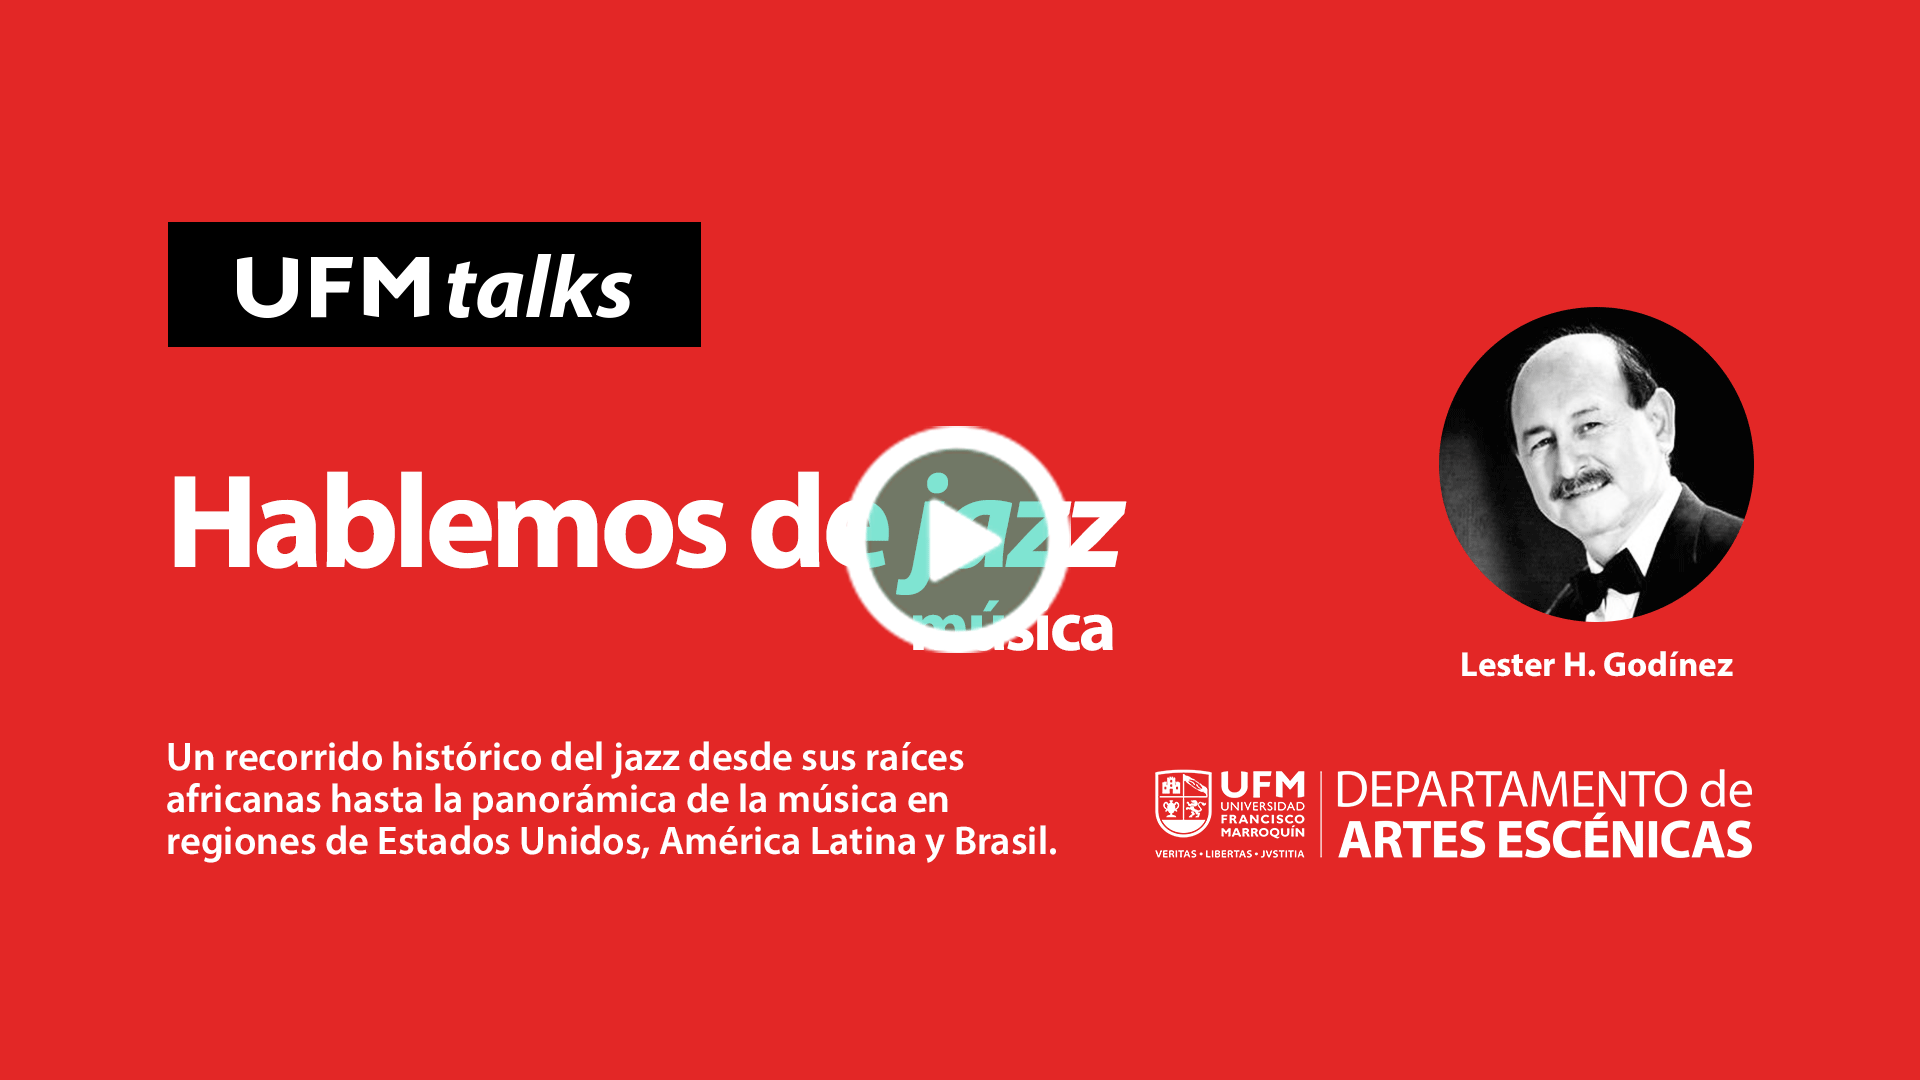 20201008_artesescenicas1_Hablemos-de-jazz-(música)--El-mundo-a-través-del-arte--UFM-TALKS